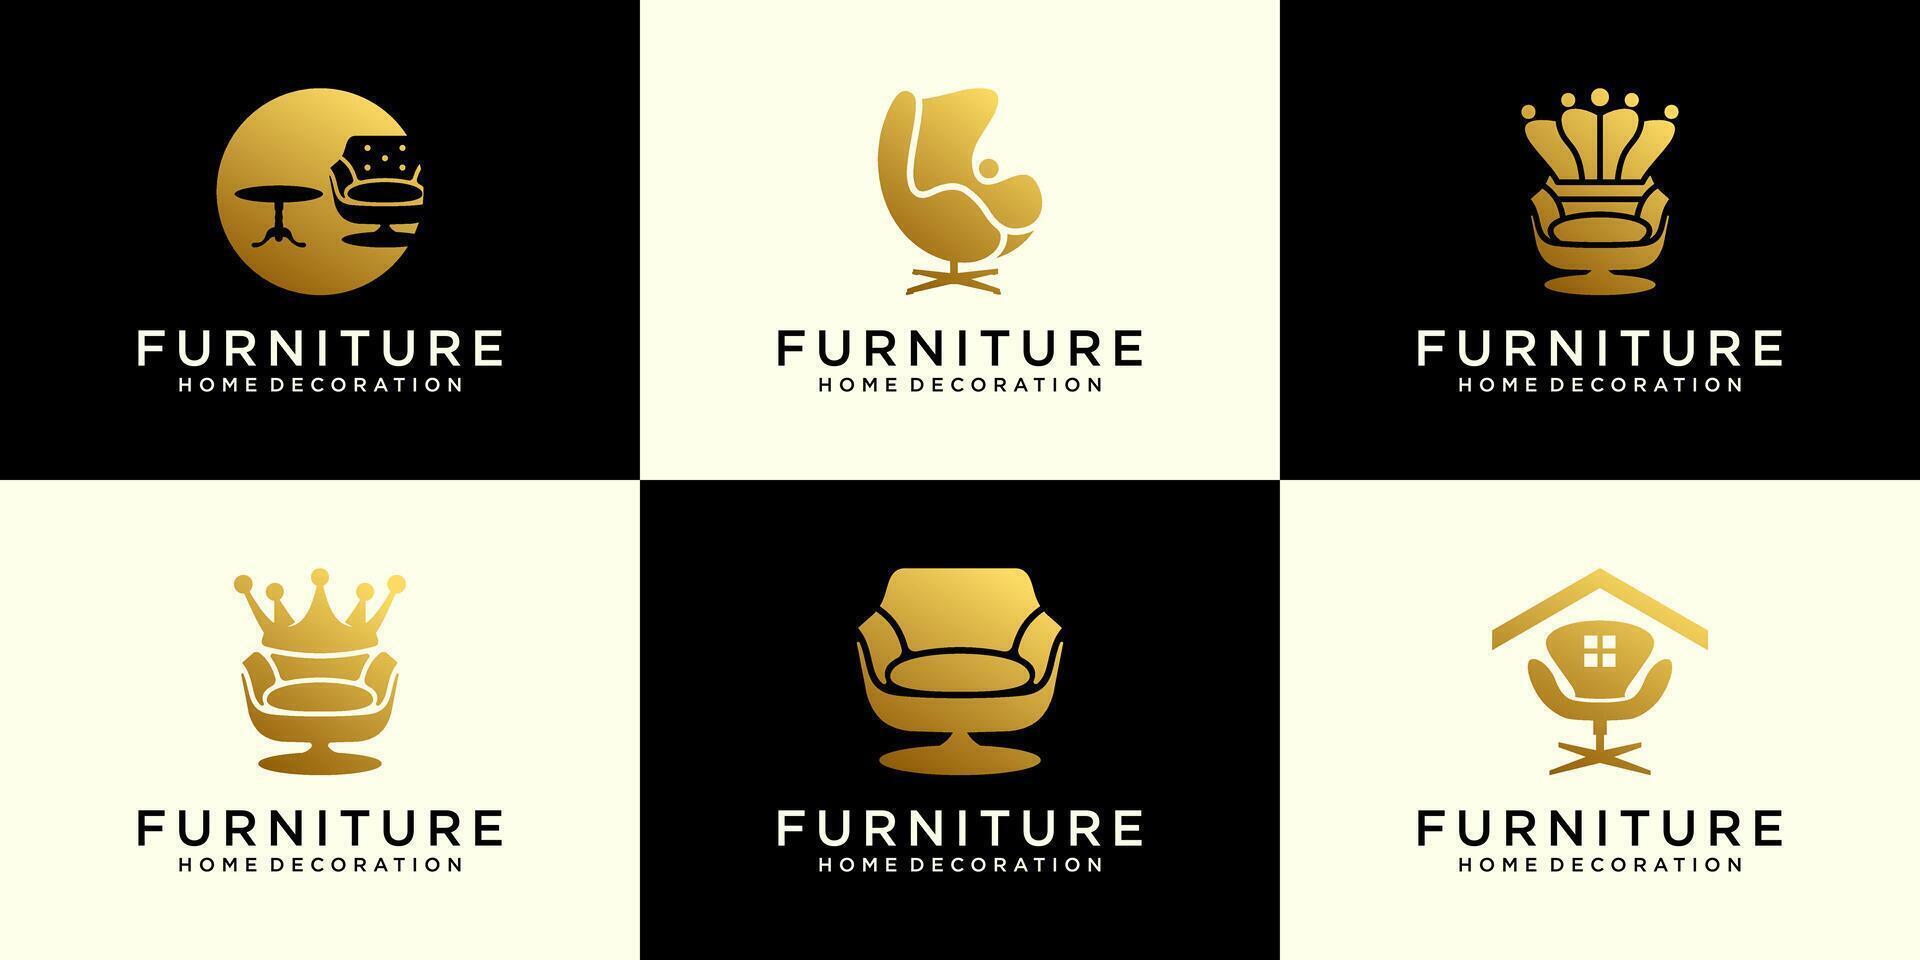 verzameling van logo ontwerp inspiratie voor huis ontwerpen, huis banken, stoelen, minimalistische interieur meubilair vector